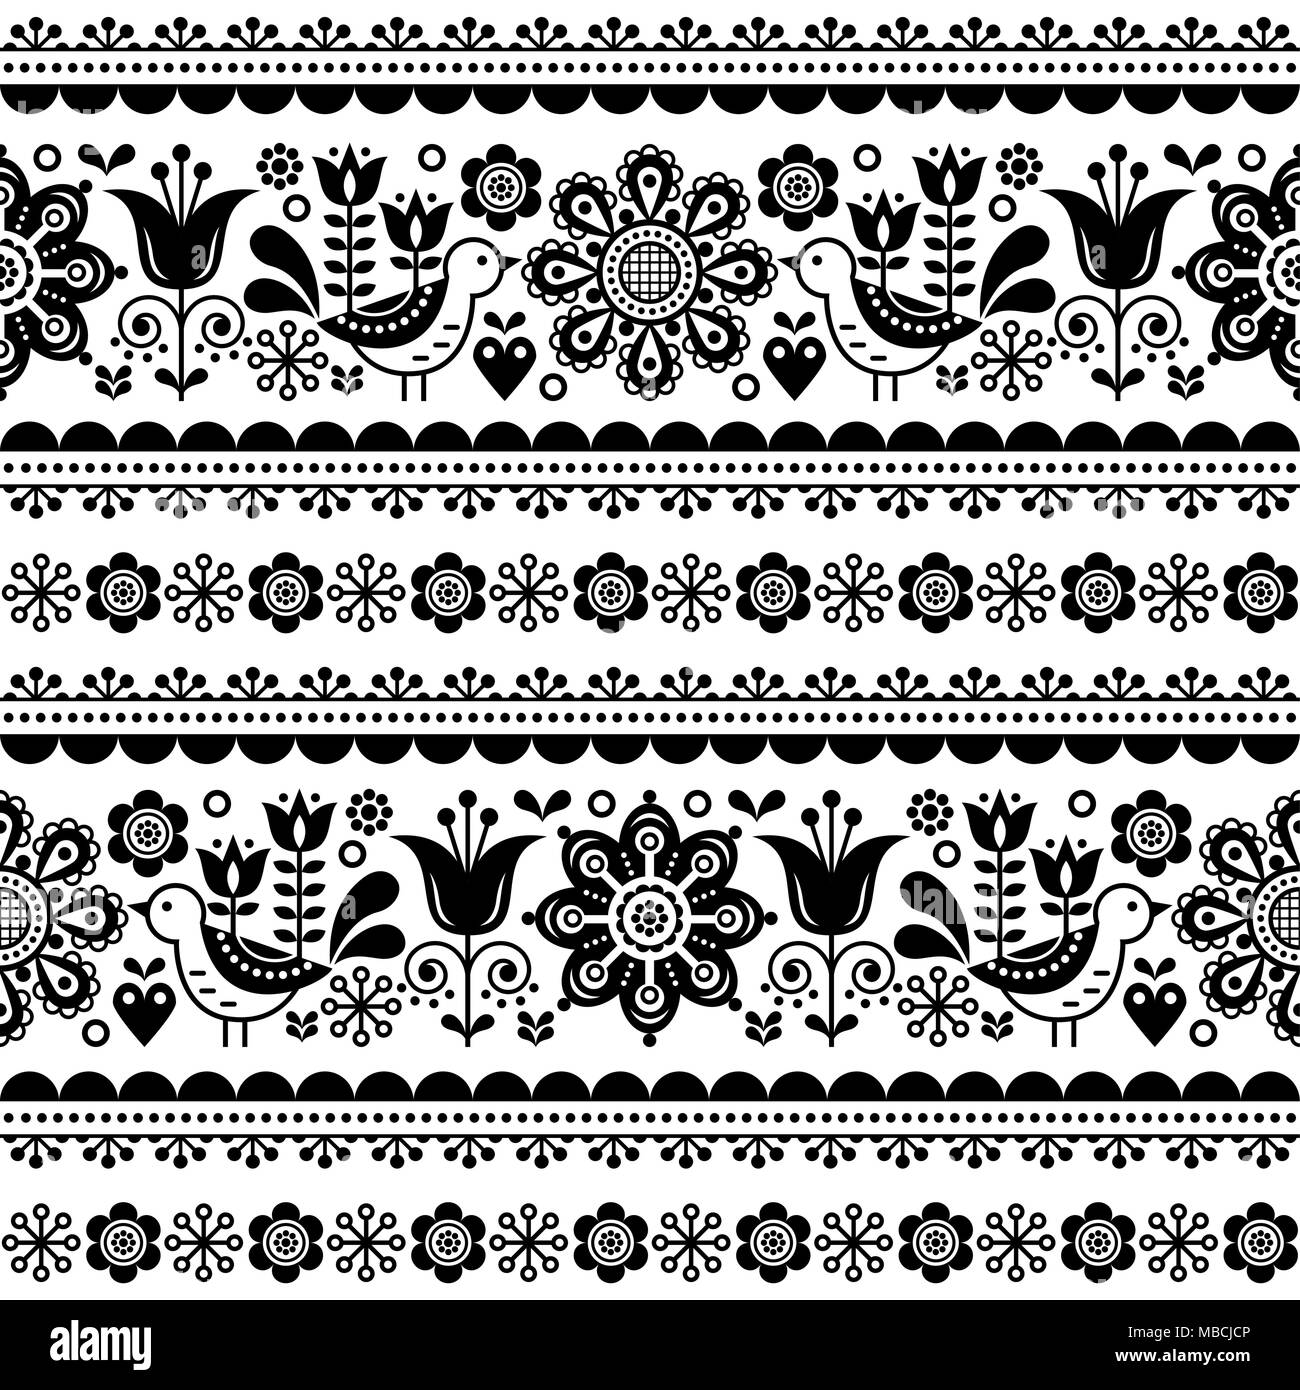 Skandinavische nahtlose Vektor Muster mit Blumen und Vögeln, Nordic Folk Art sich wiederholende Schwarz und Weiß ornament Stock Vektor